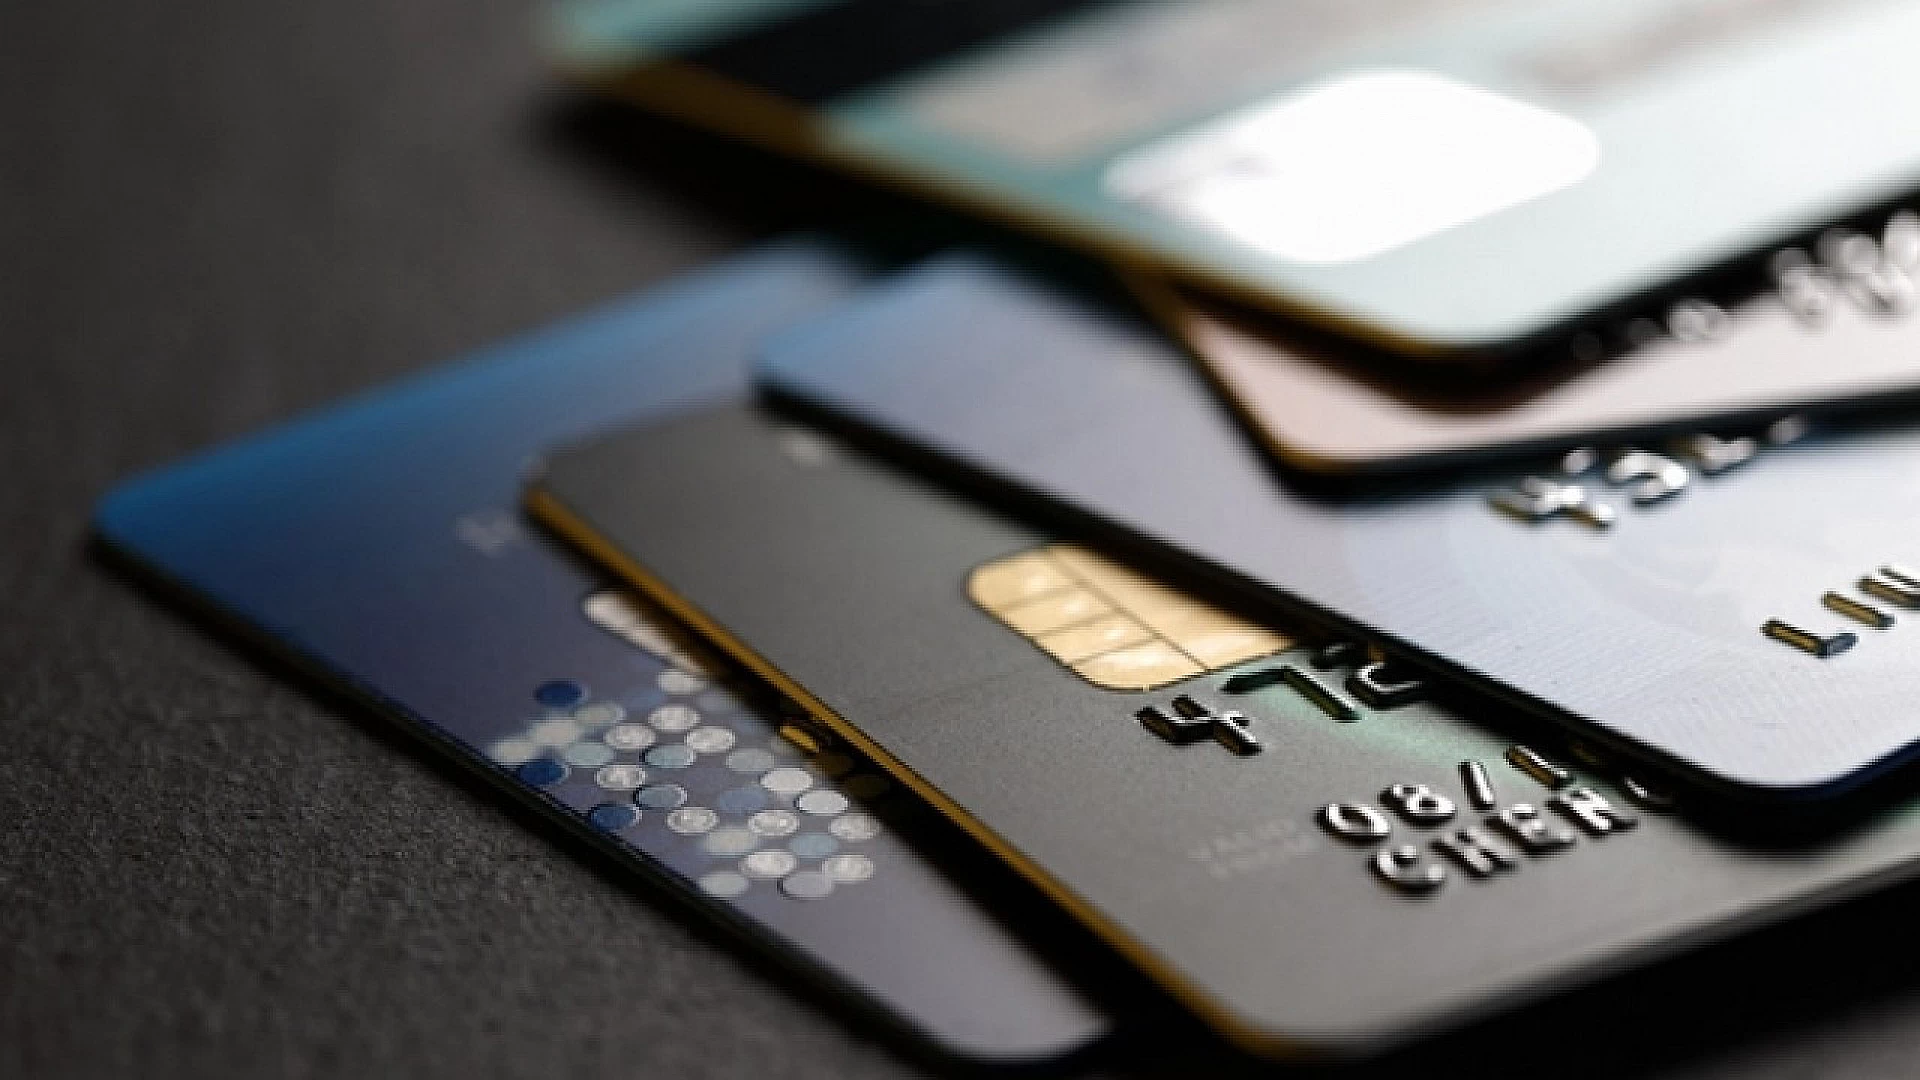 Kredi kartı faizlerinde değişiklik olmayacak